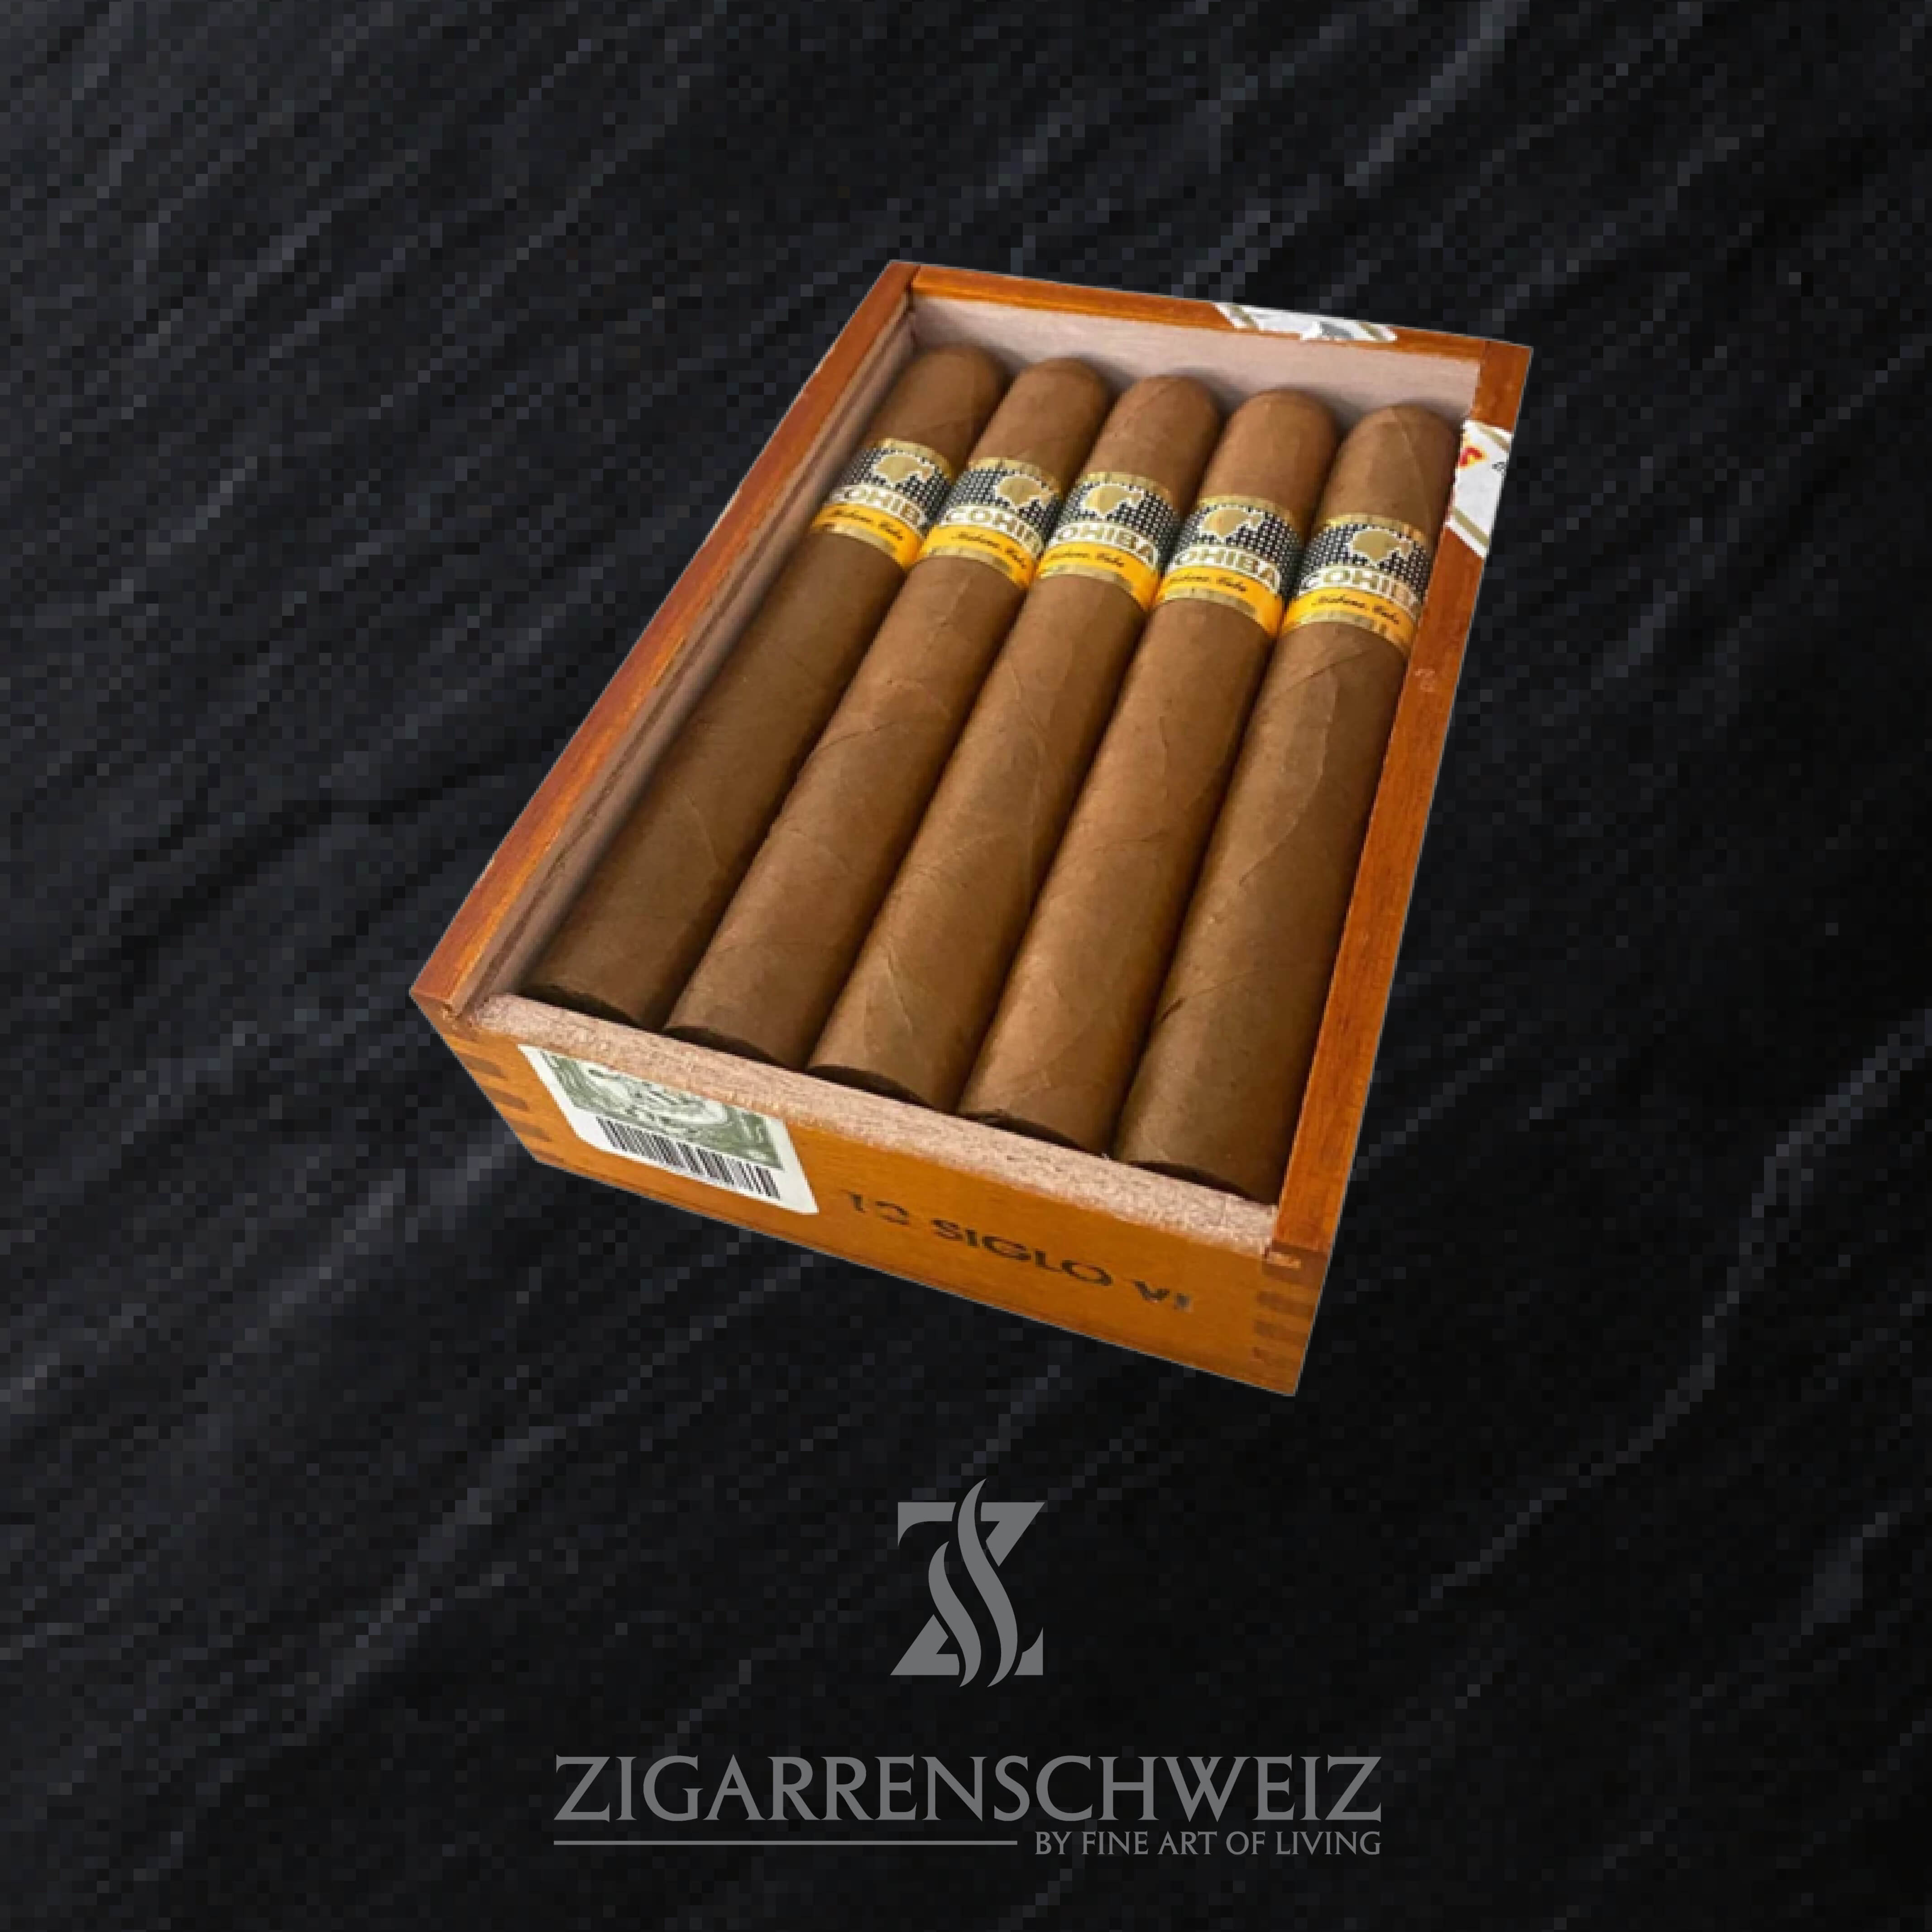 Cohiba Siglo IV (6) Zigarren aus der Linea 1492 von Cohiba - 10er Kiste offen